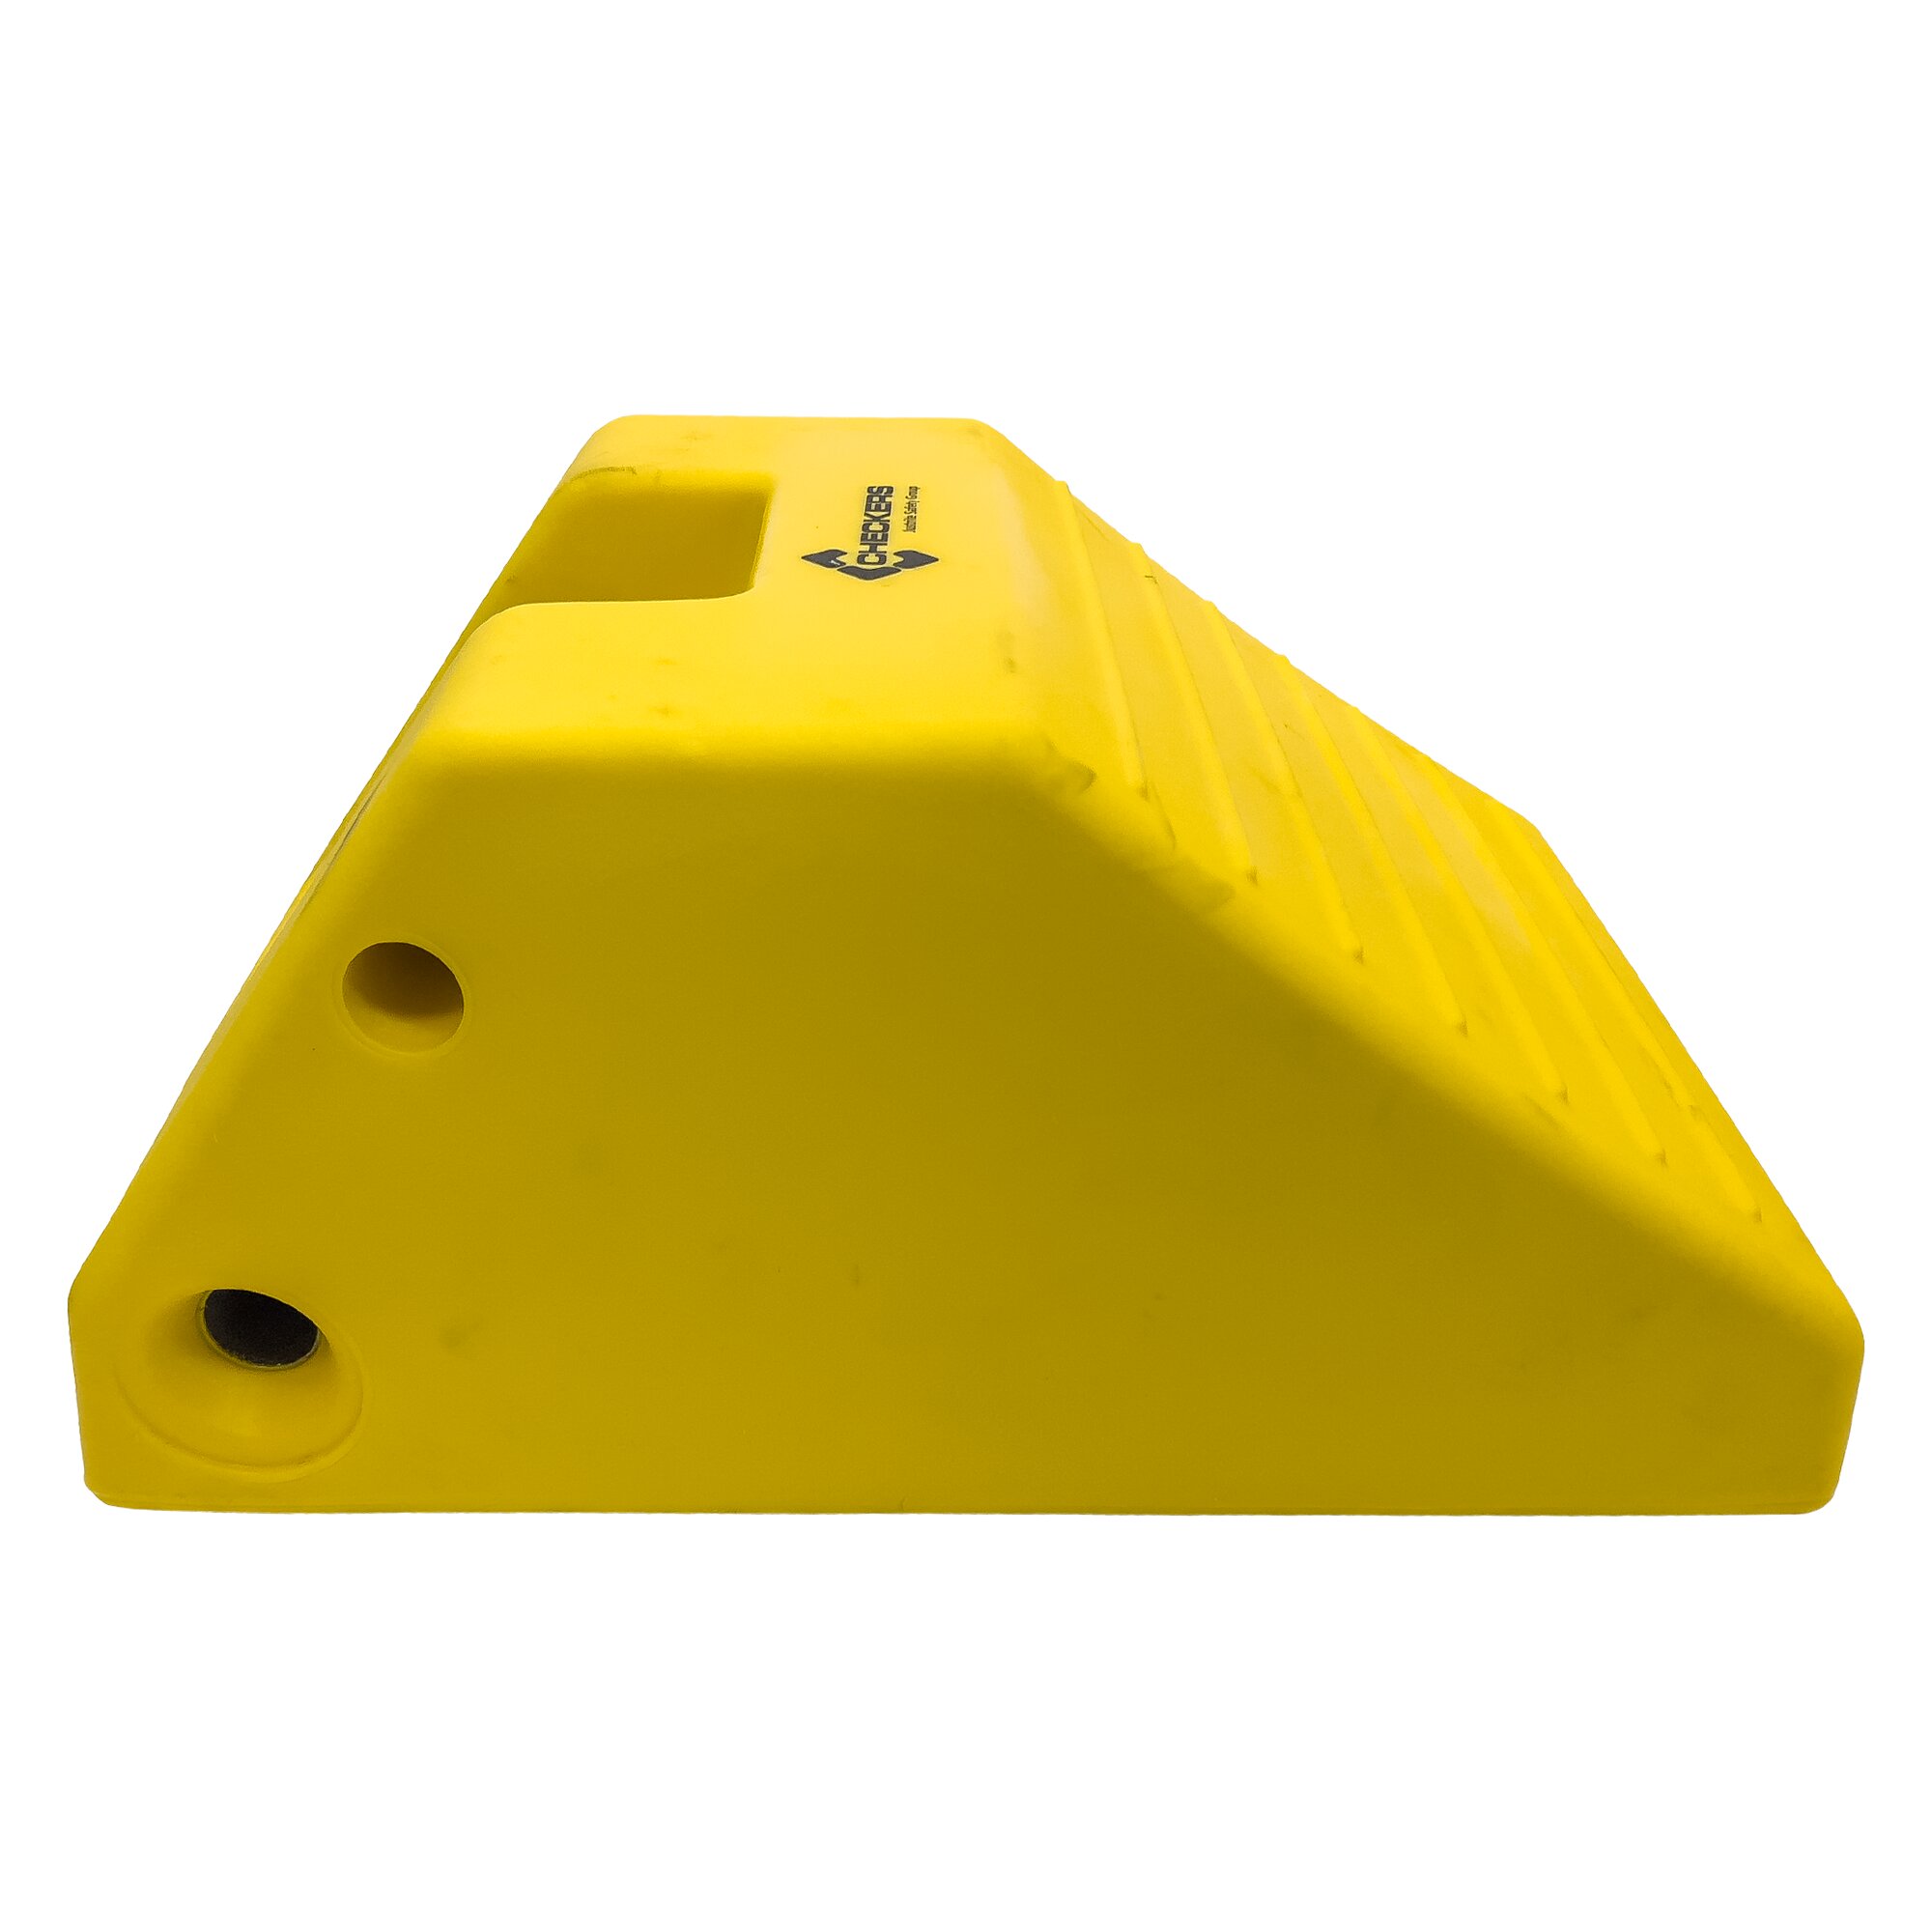 Žlutý plastový zakládací klín pod kola MC3012 - délka 56 cm, šířka 38 cm, výška 28 cm